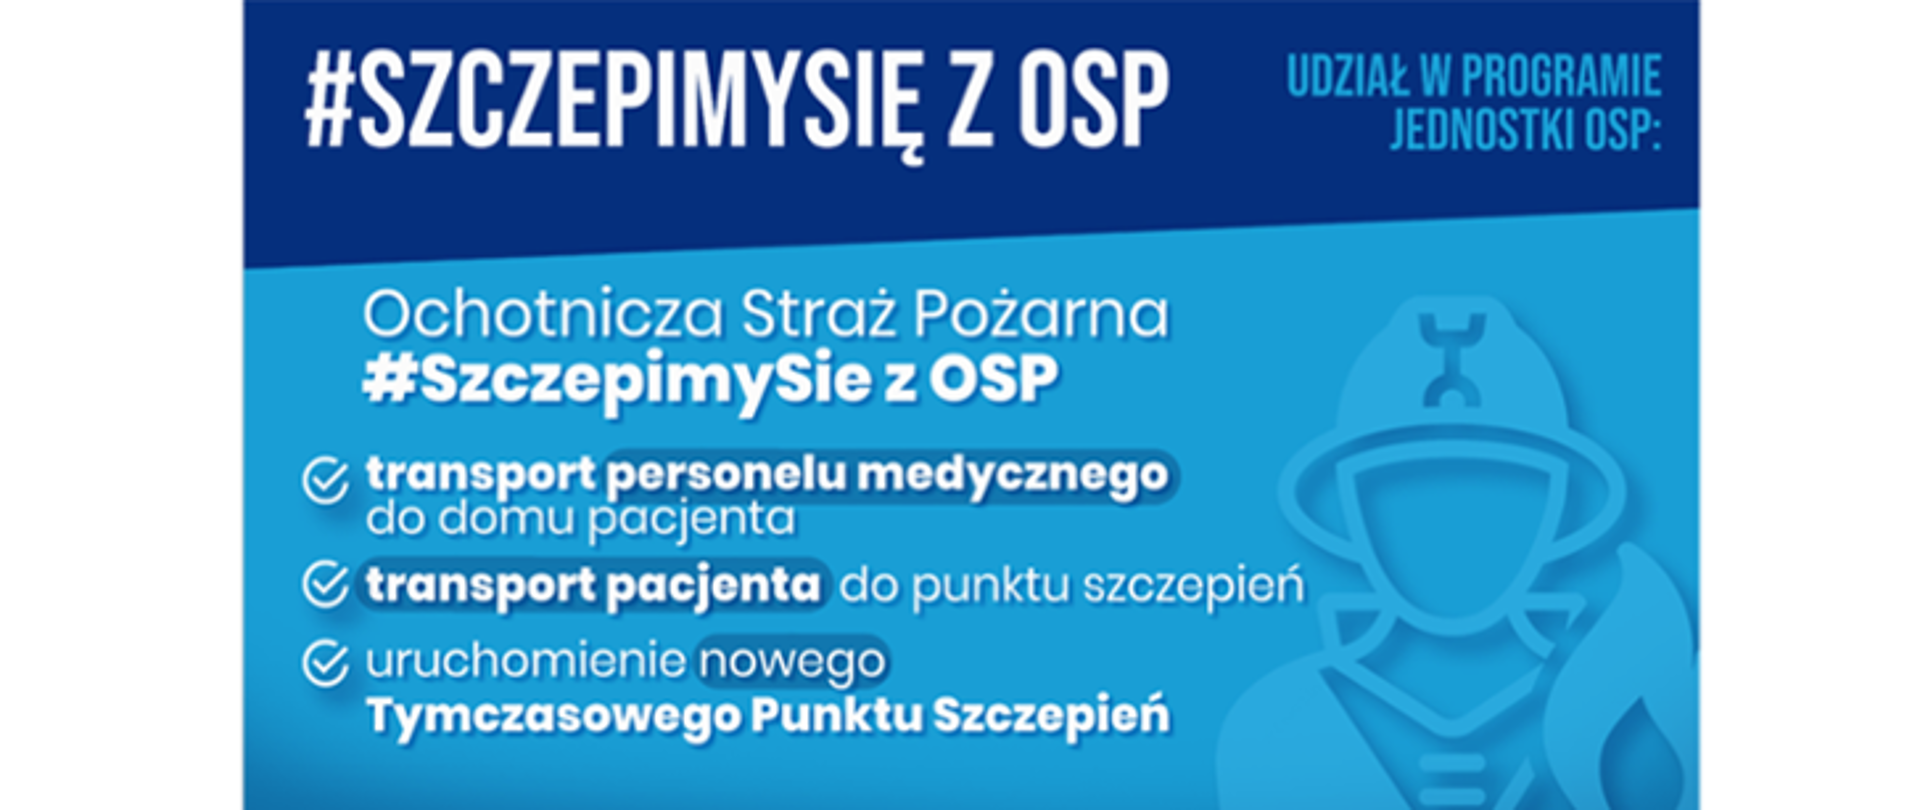 Plakat akcji Szczepimy się z OSP